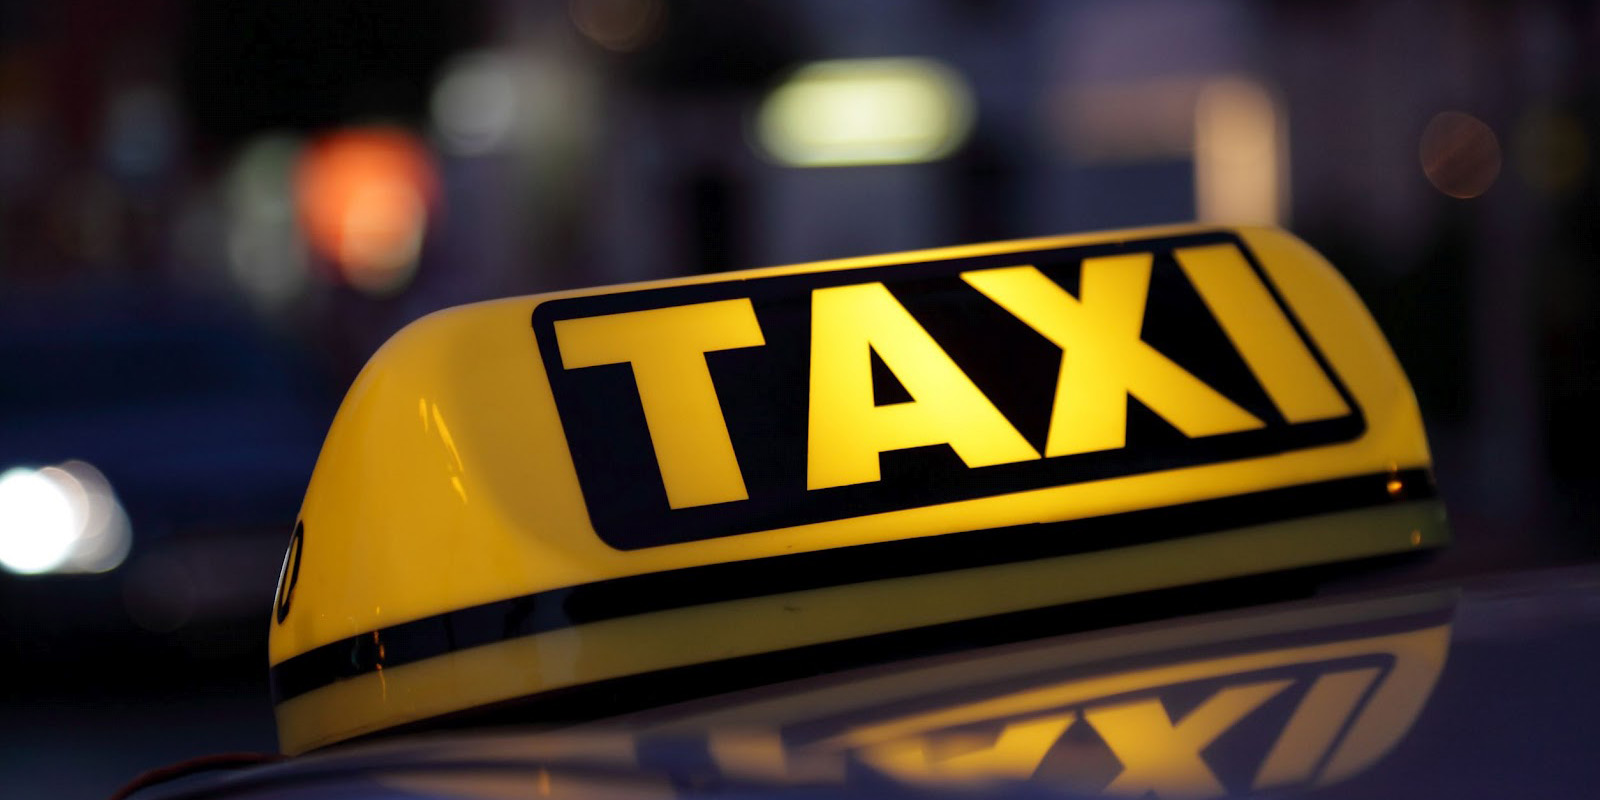 Организации, оказывающие услуги такси в Могилеве, скрывали доходы от уплаты подоходного налога